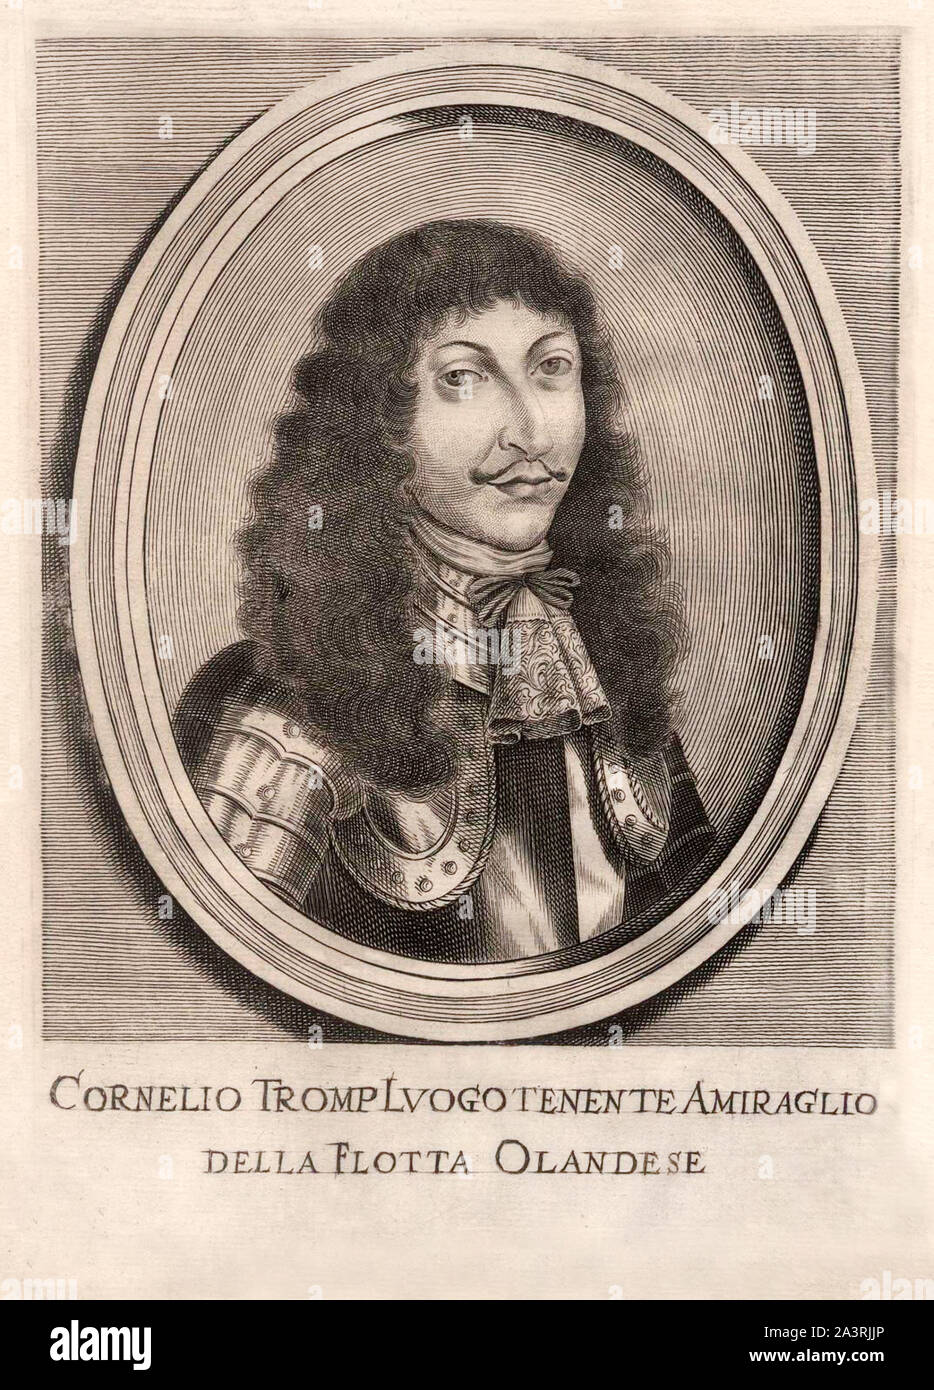 Maartenszoon Cornelis Tromp (1629 - 1691) était un officier de la marine néerlandaise qui a servi comme lieutenant-général de l'amiral dans la marine néerlandaise, et brièvement à titre de gener Banque D'Images